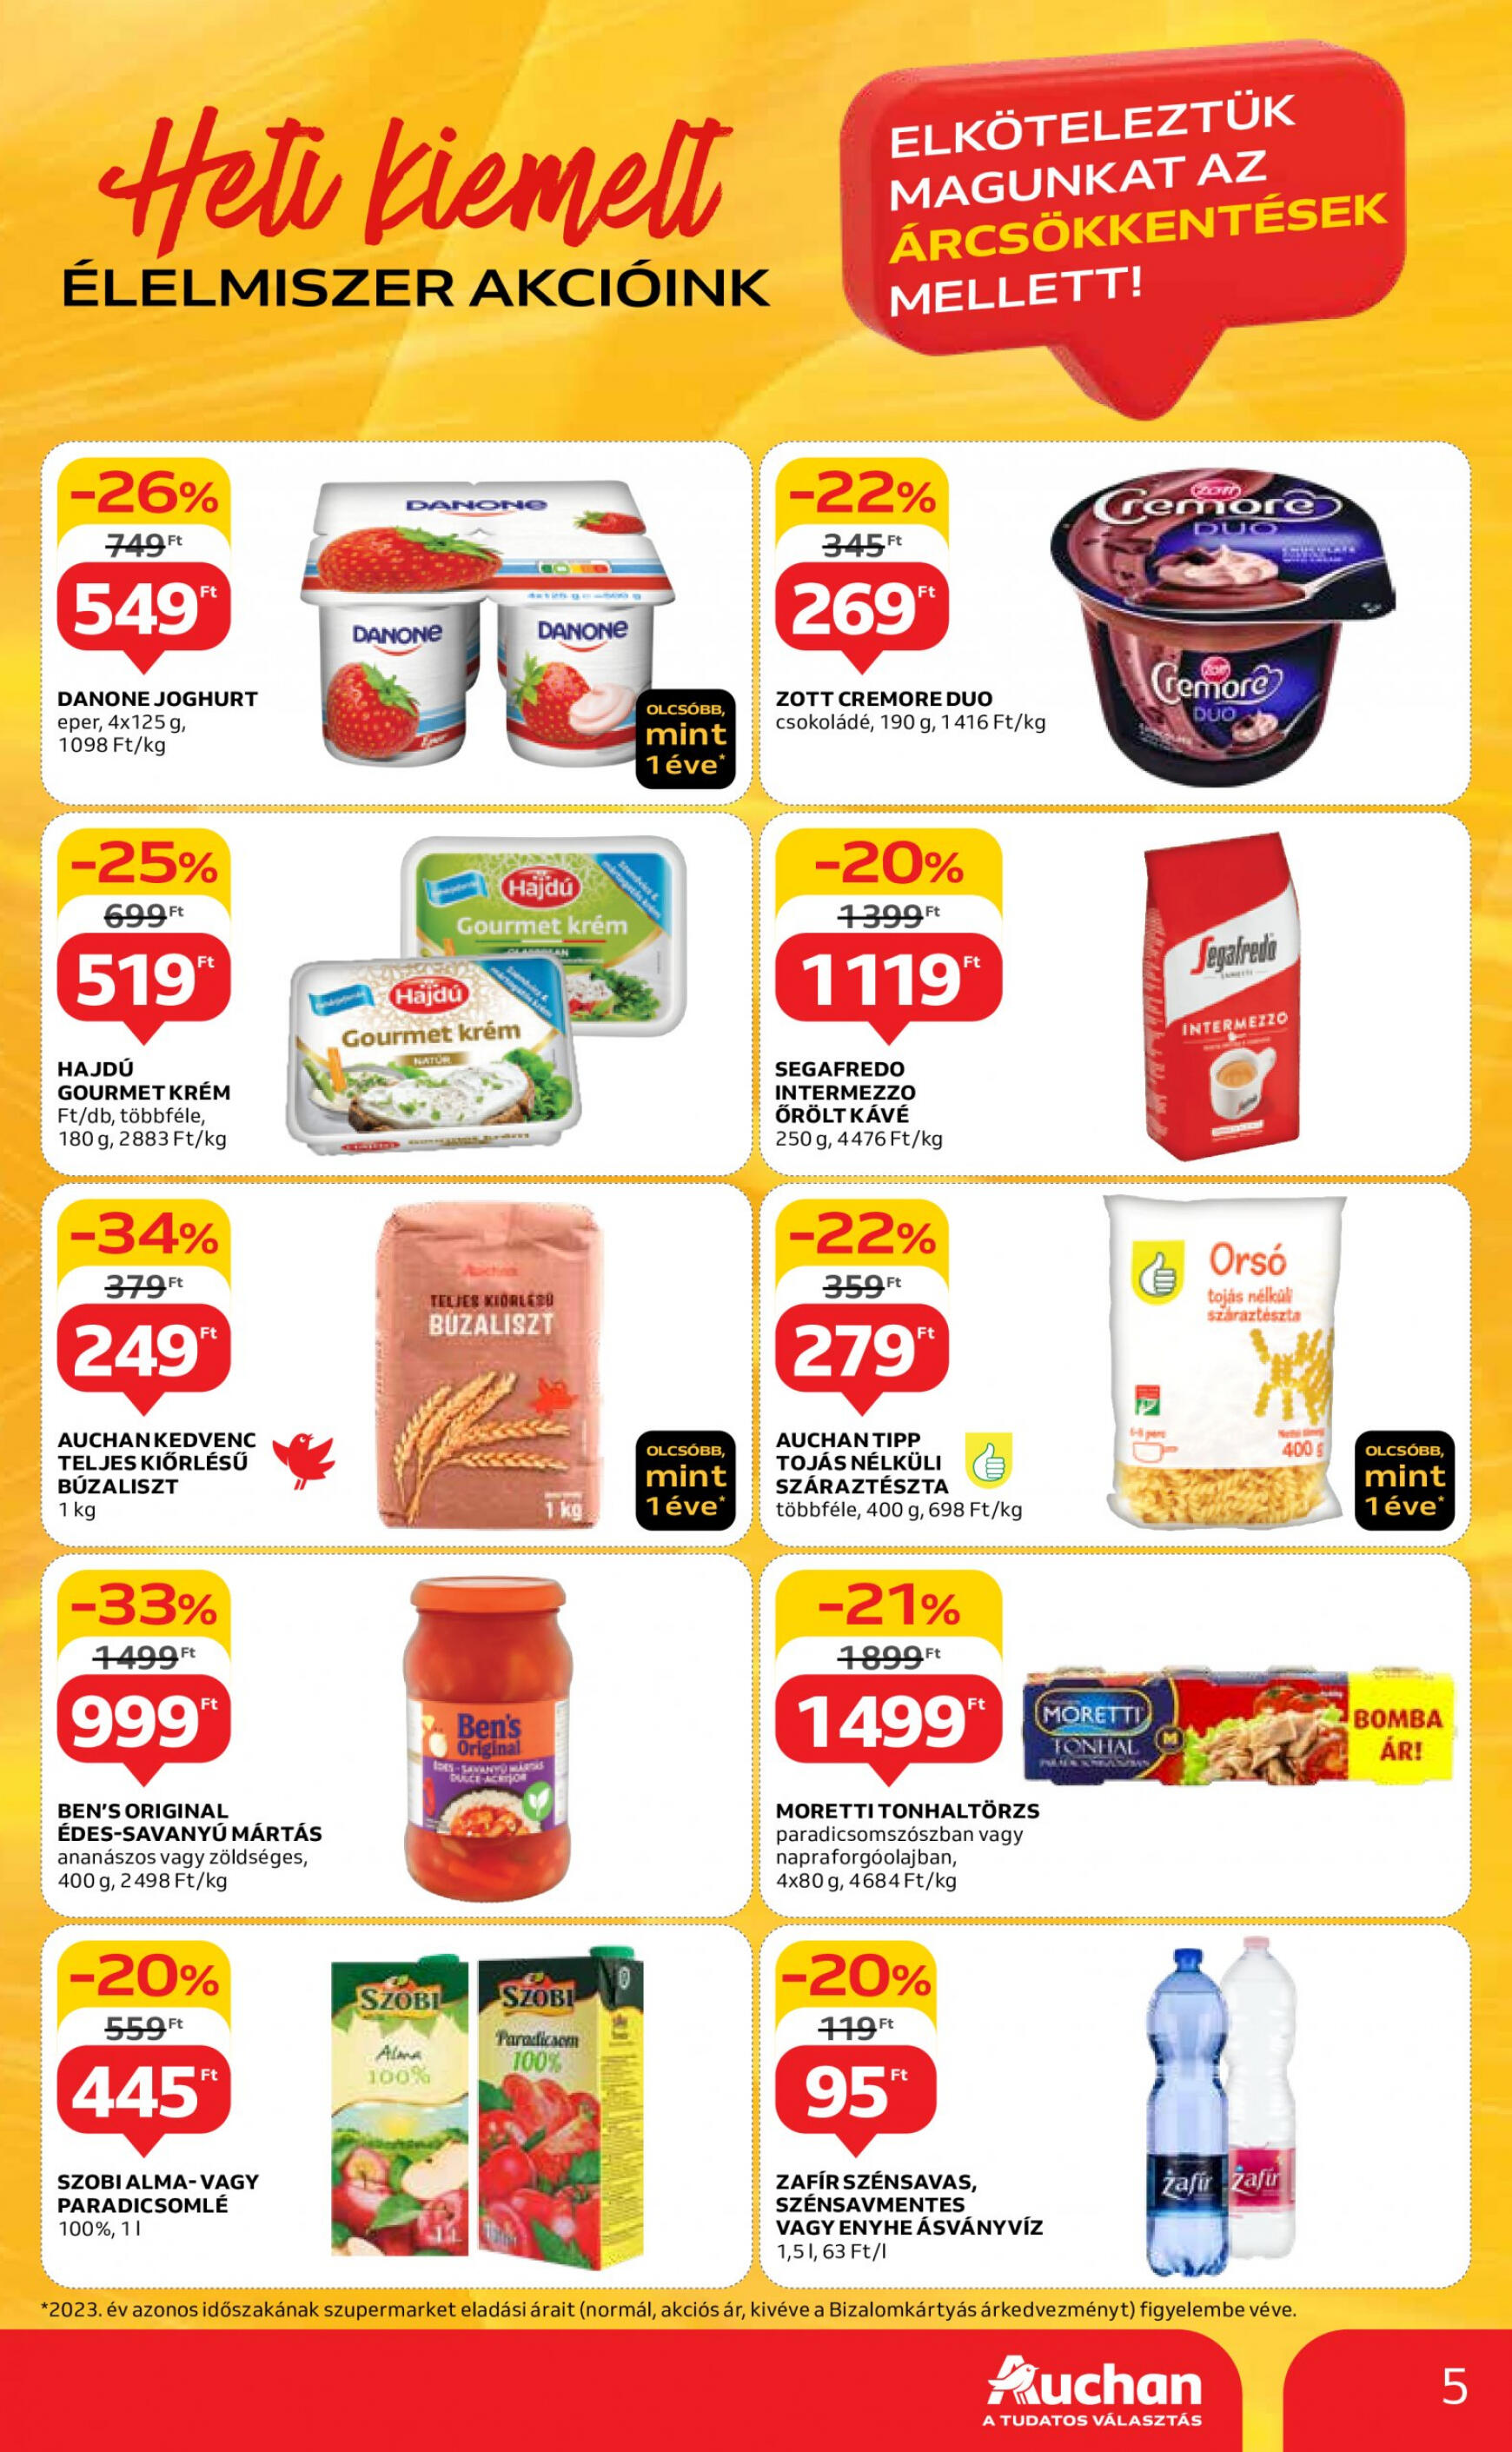 auchan - Aktuális újság Auchan szupermarket 05.02. - 05.08. - page: 5